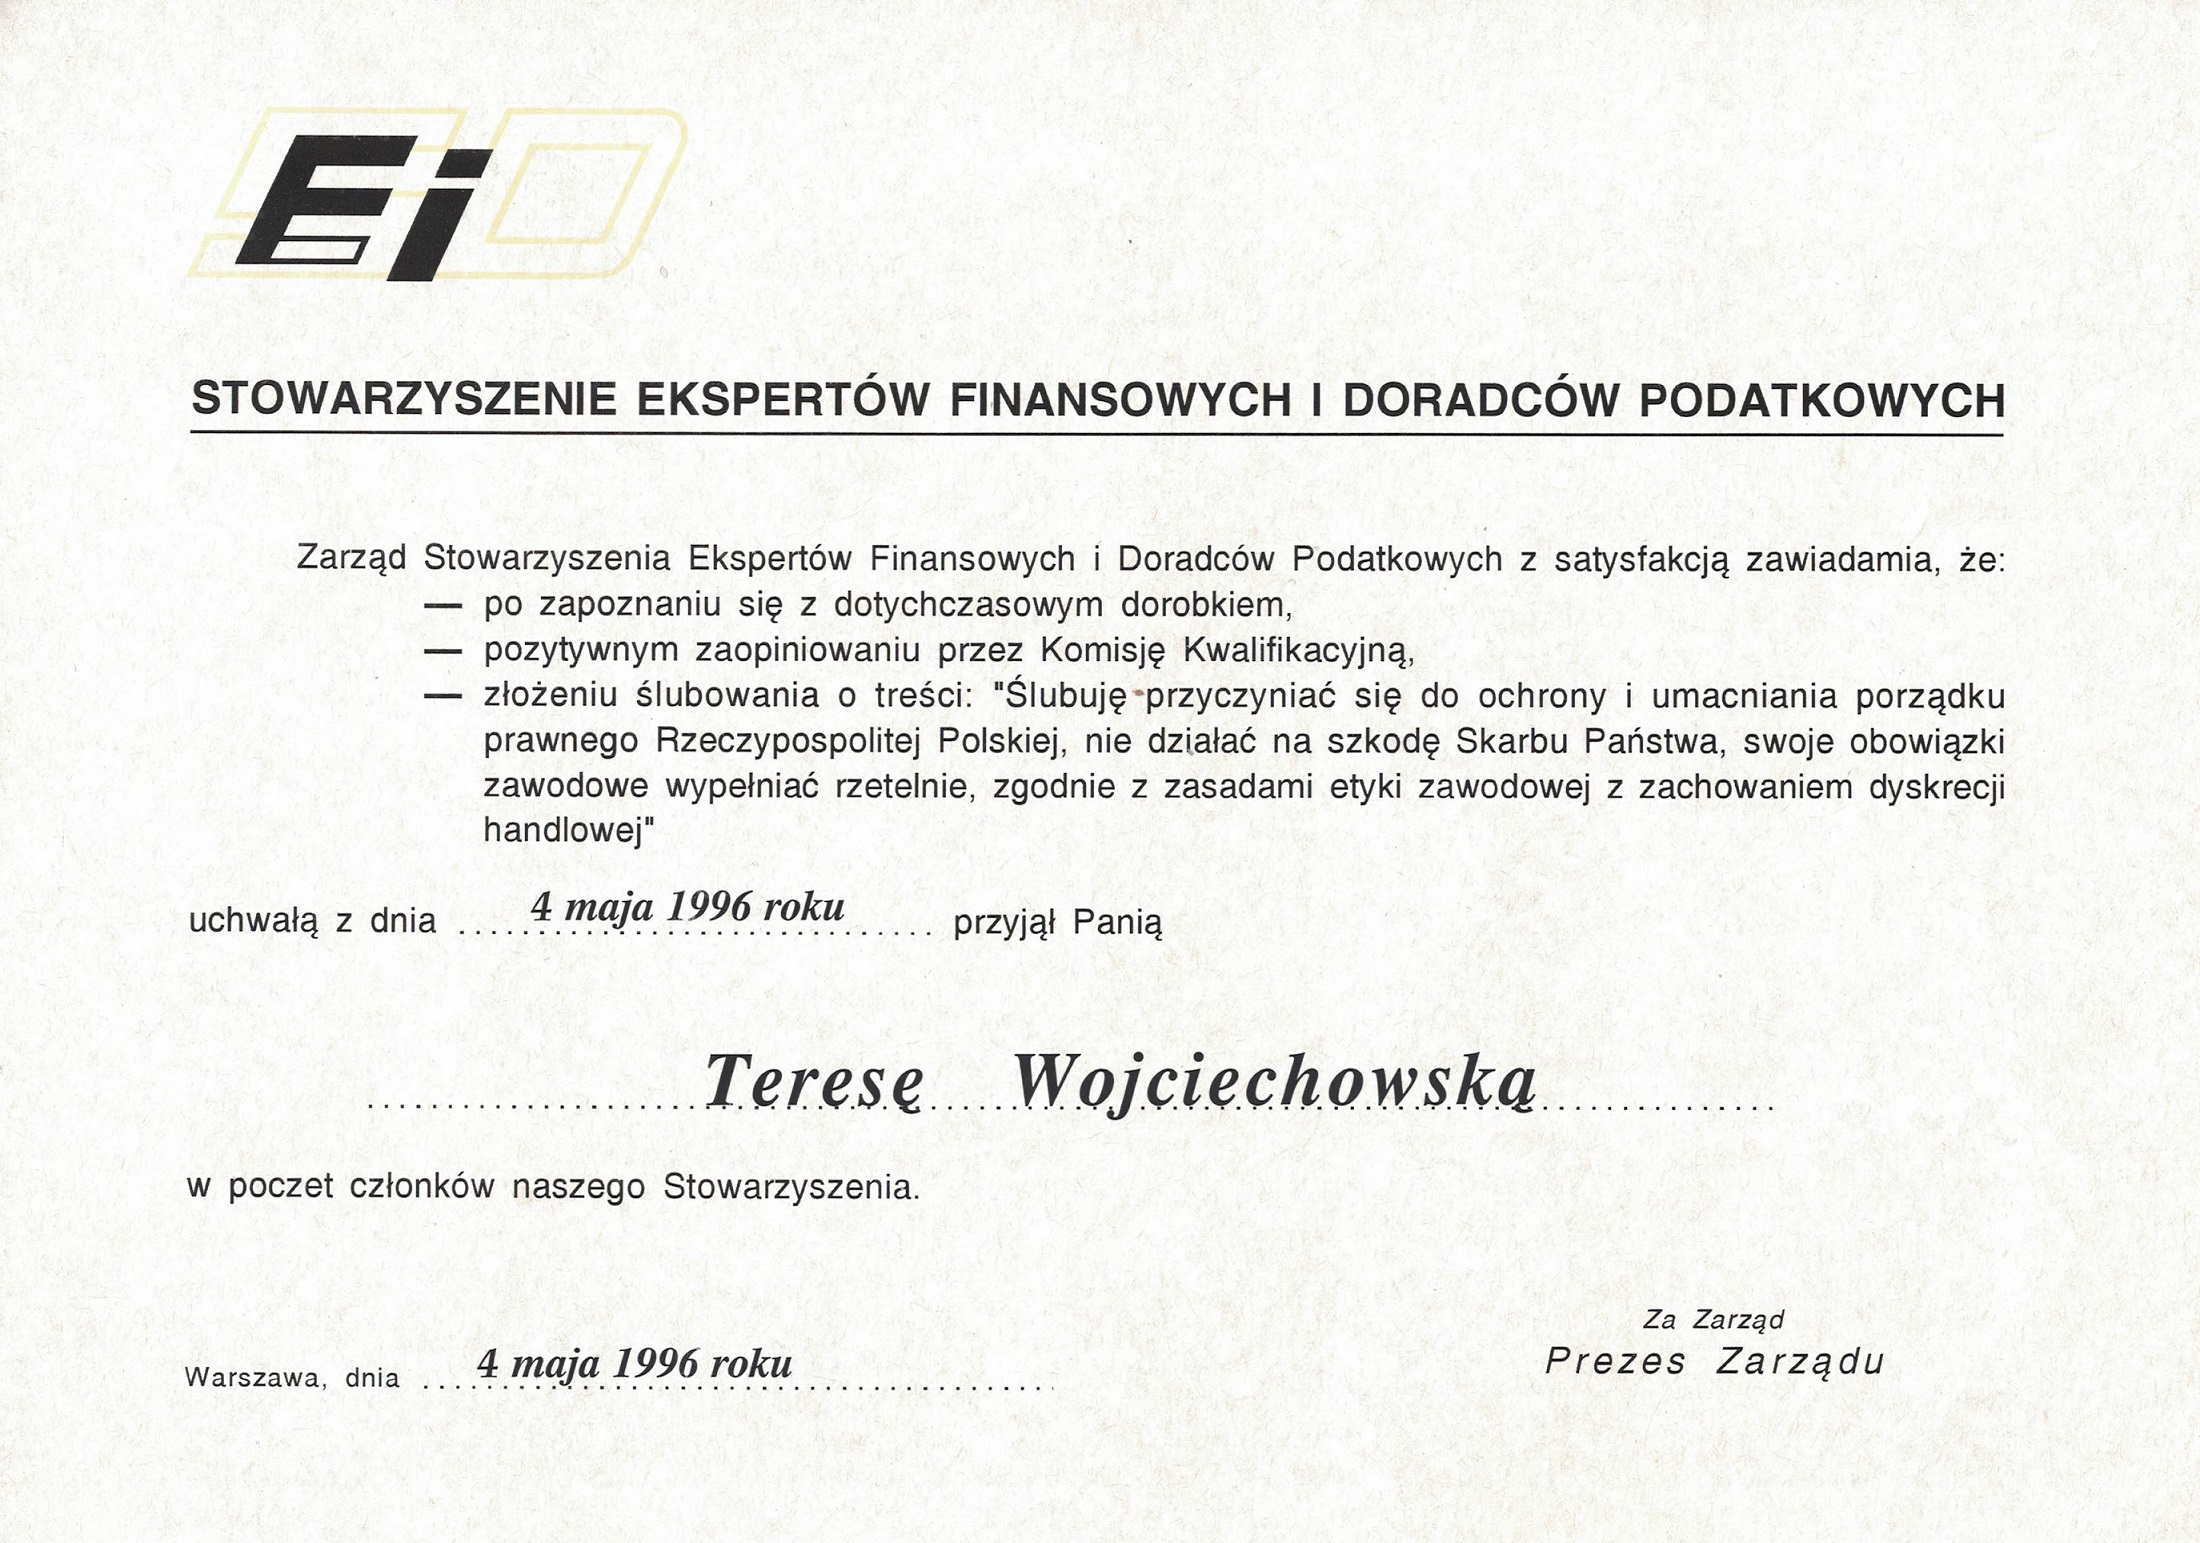 Kancelaria Prawno-Podatkowa Sekret Teresa Wojciechowska certyfikat 8